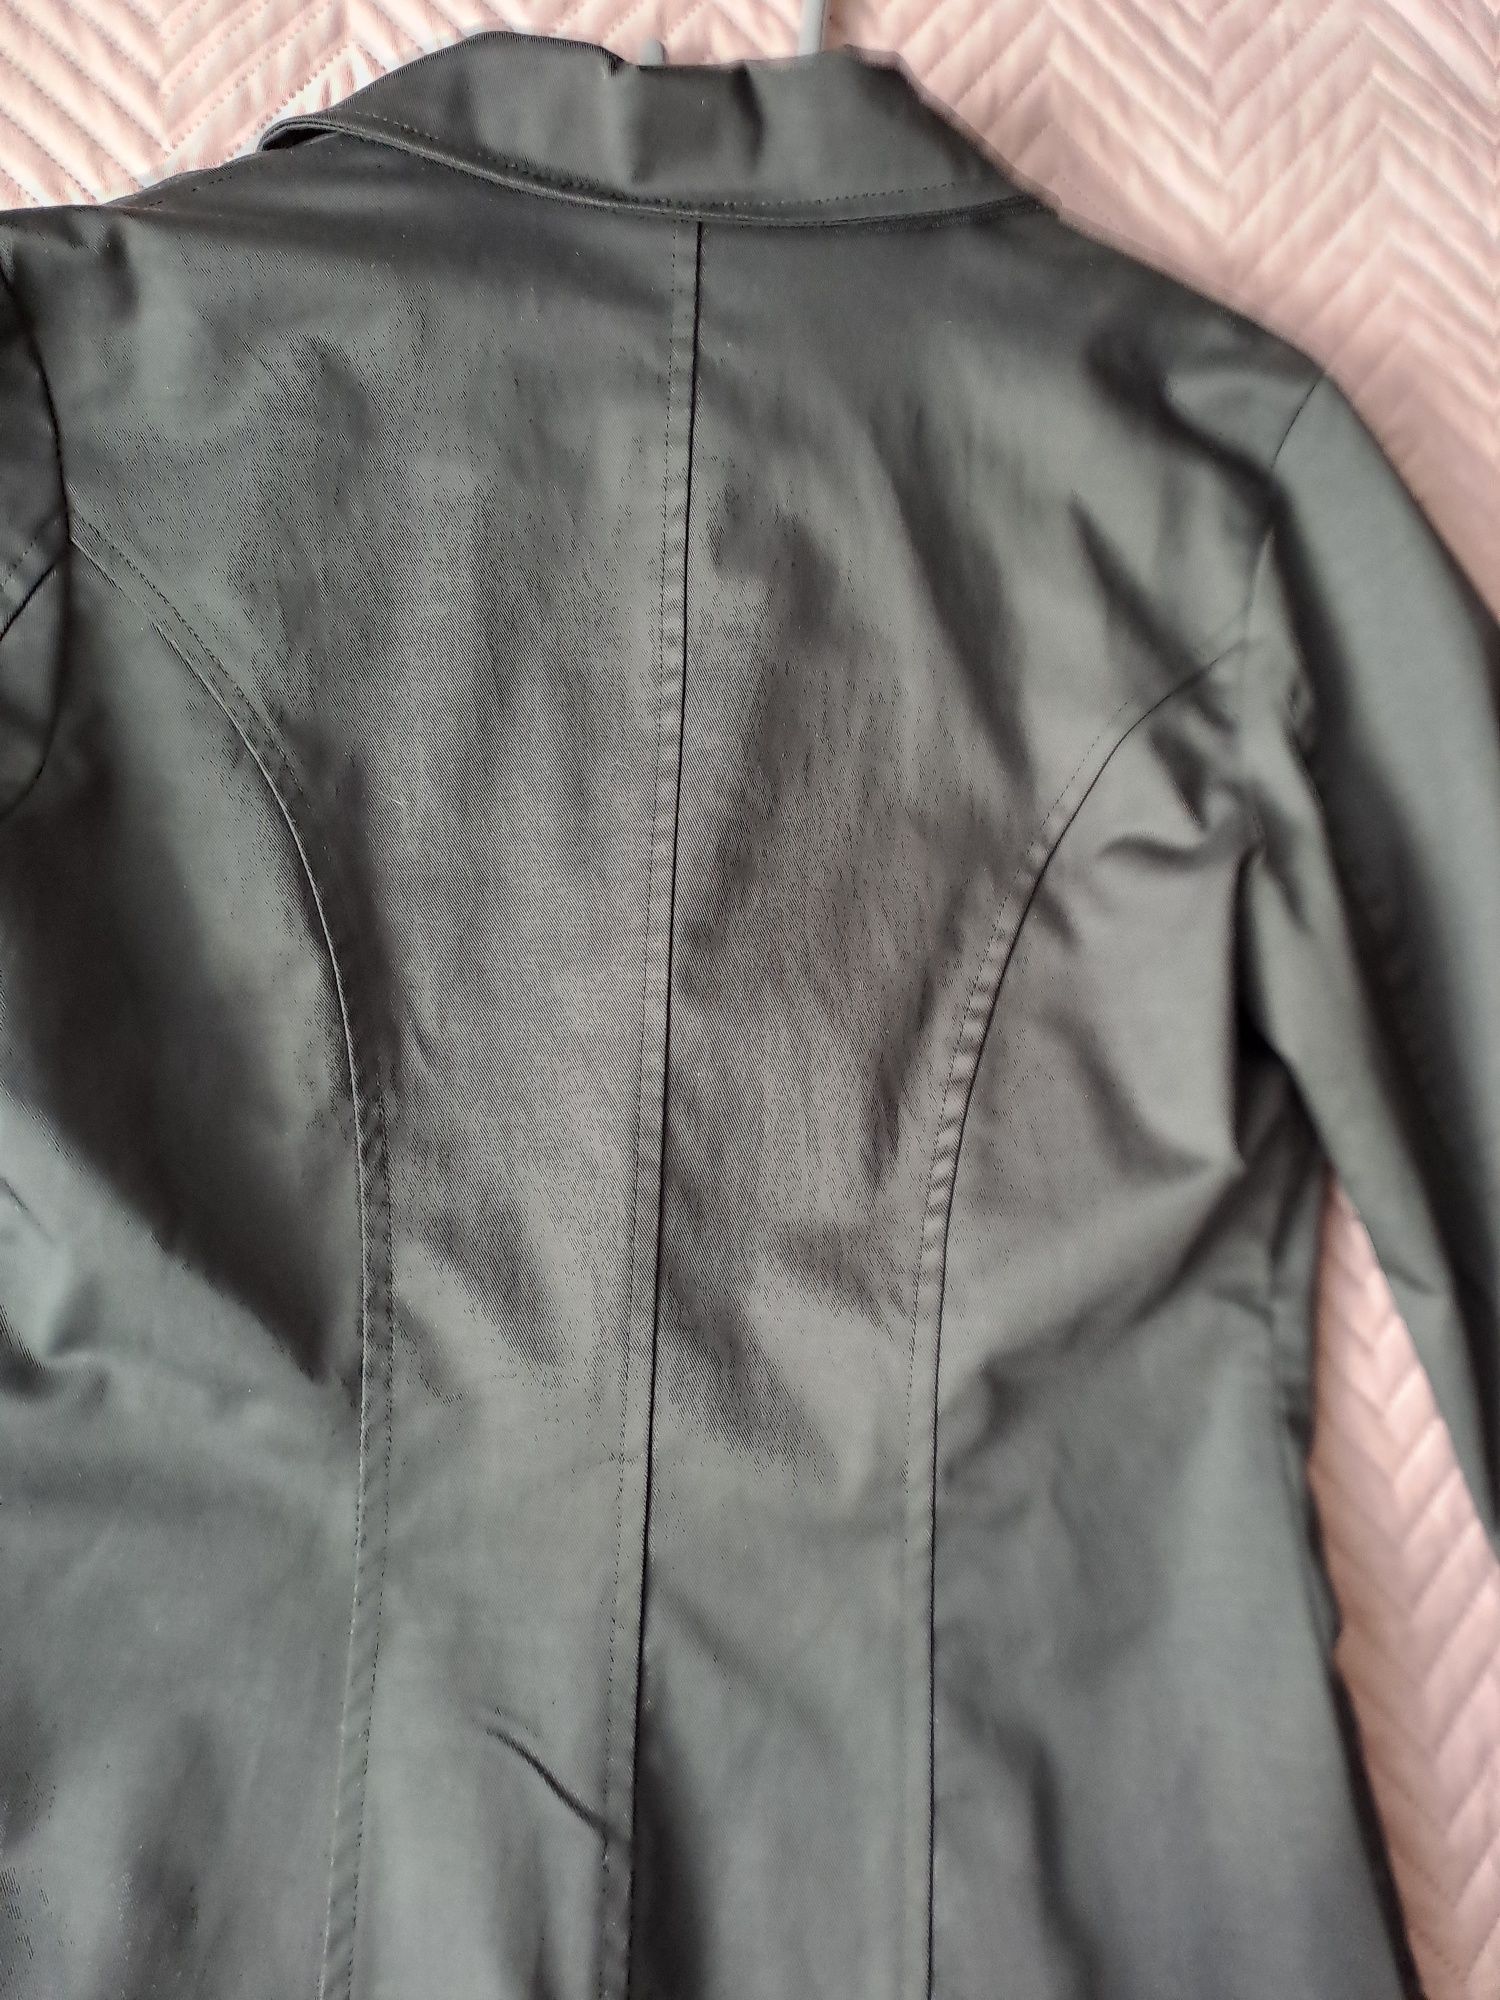 Официално дамско сако,черно на цвят,ново без забелележки.